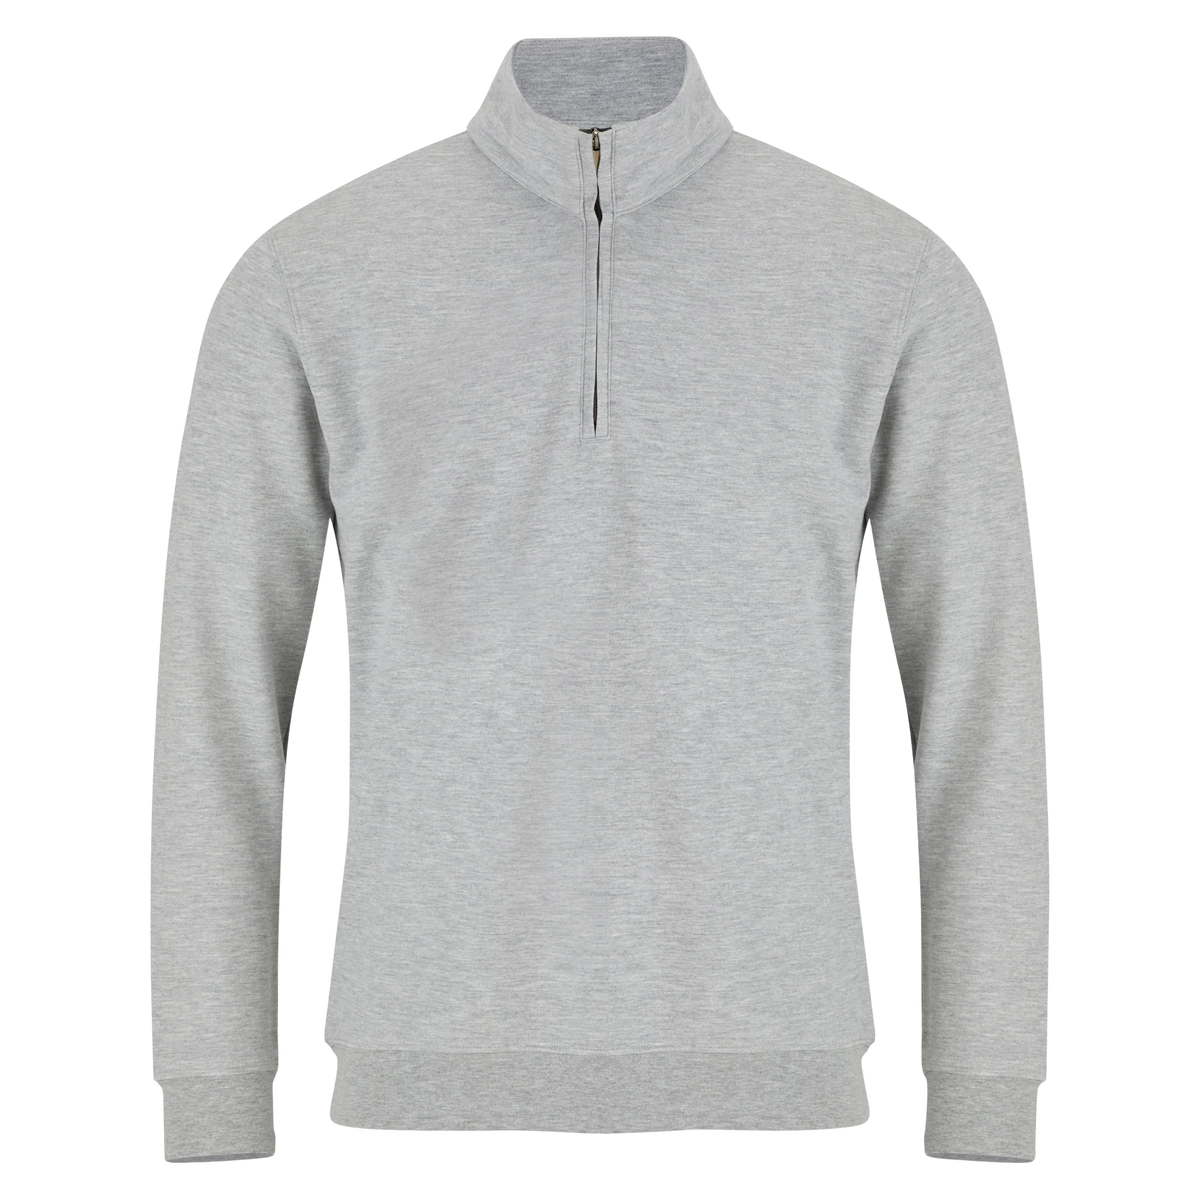 Douglas 1/4 Zip Jersey Sweateshirt For Men | Coes